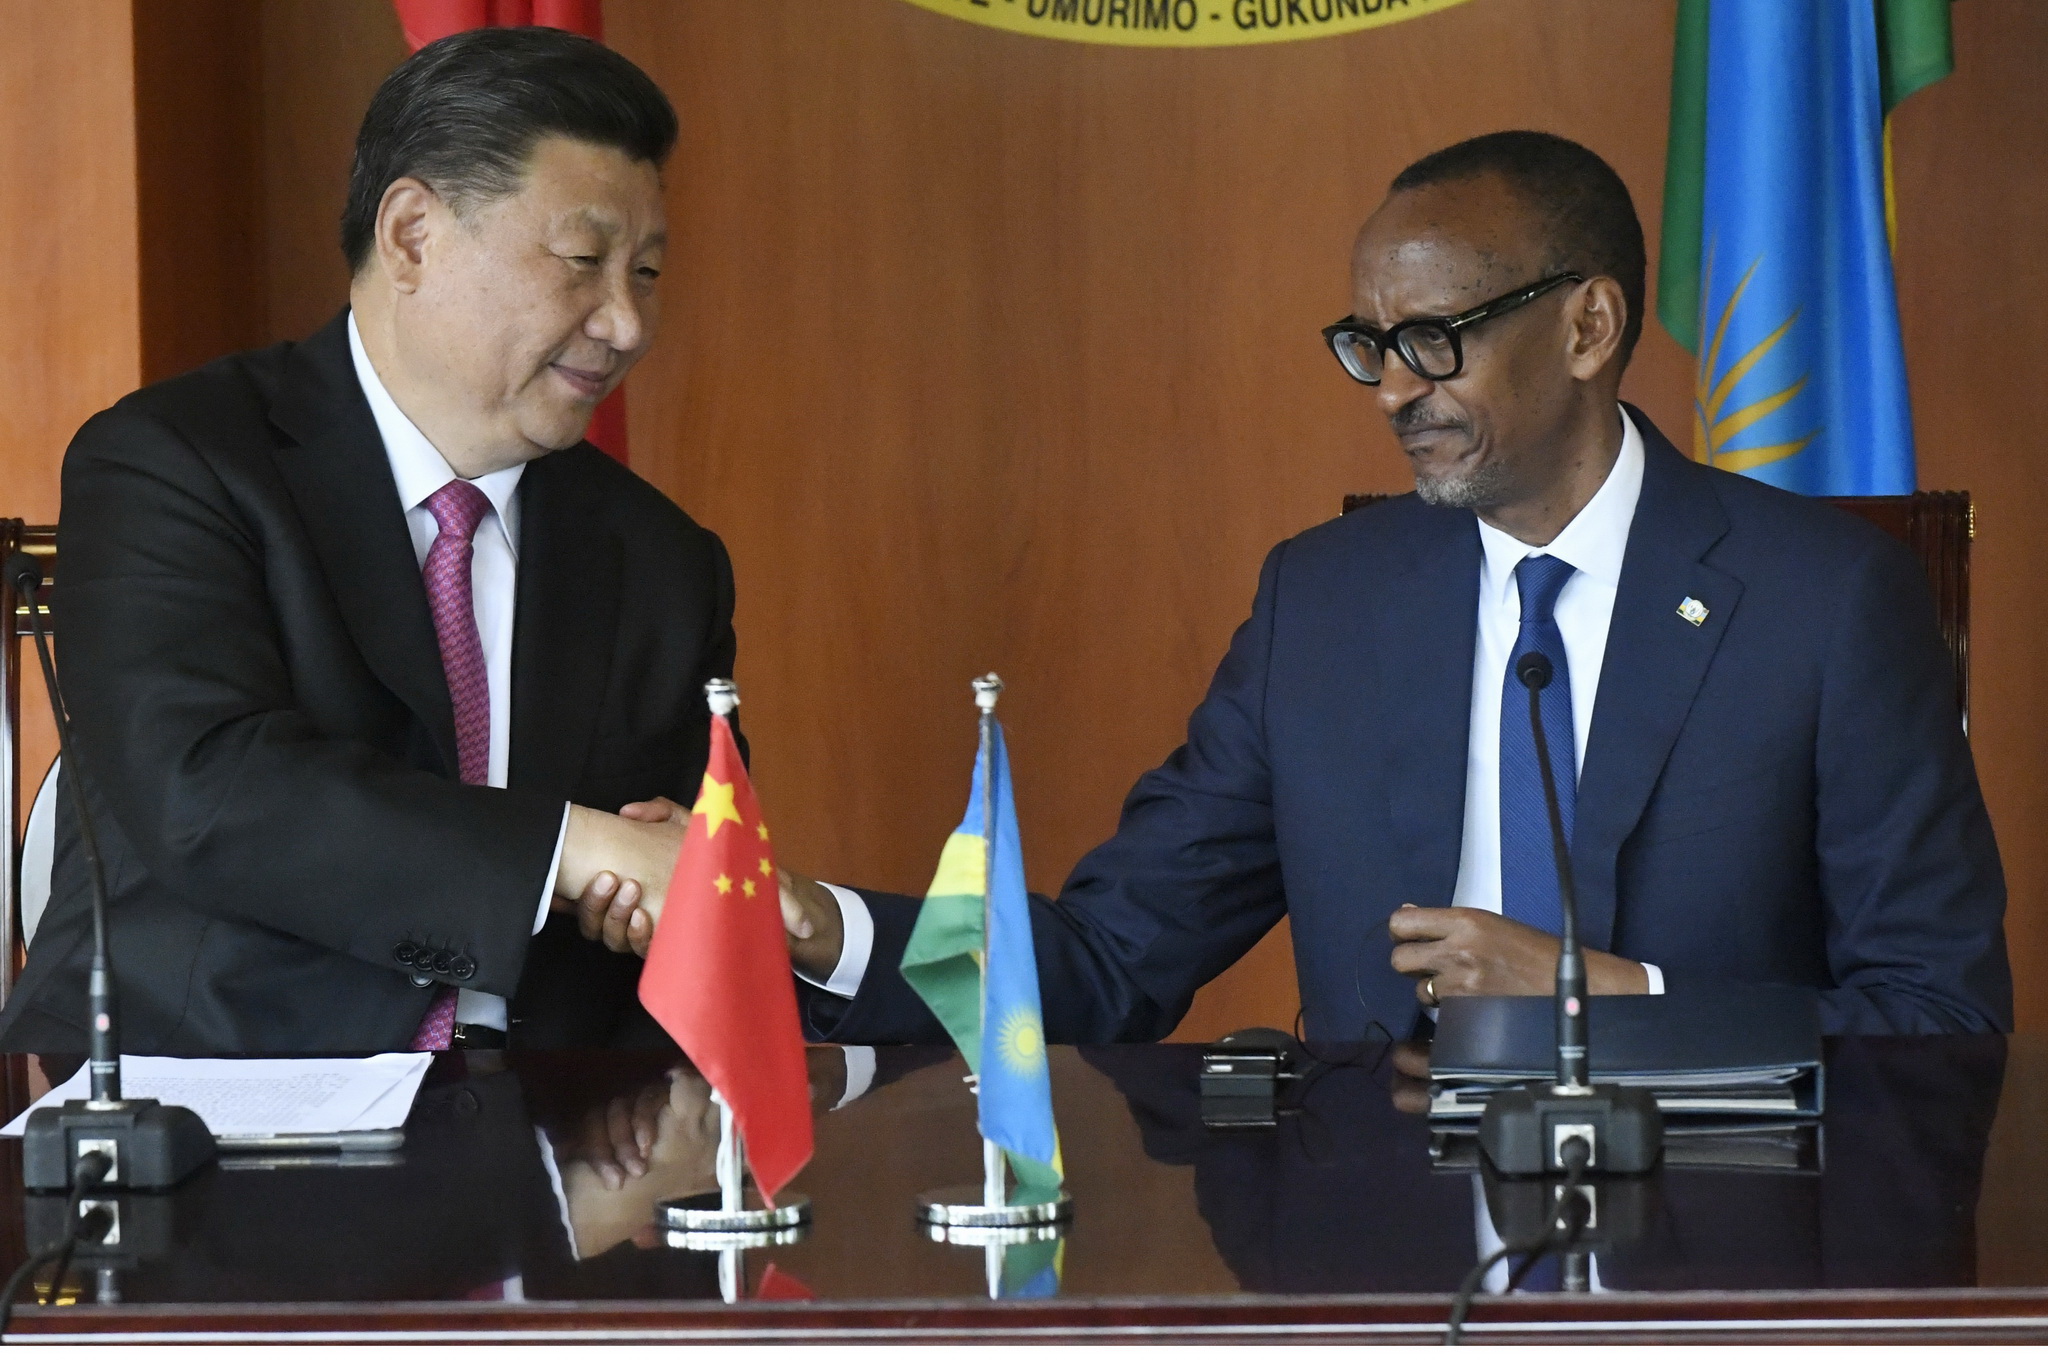 Chủ tịch Trung Quốc Tập Cận Bình mới có chuyên công du châu Phi vào tháng 7/2018. Trong ảnh: Chủ tịch Trung Quốc Tập Cận Bình (trái) và Tổng thống Rwanda Paul Kagame tại cuộc họp báo sau hội đàm ở Kigali ngày 23/7. (Ảnh: AFP/TTXVN)